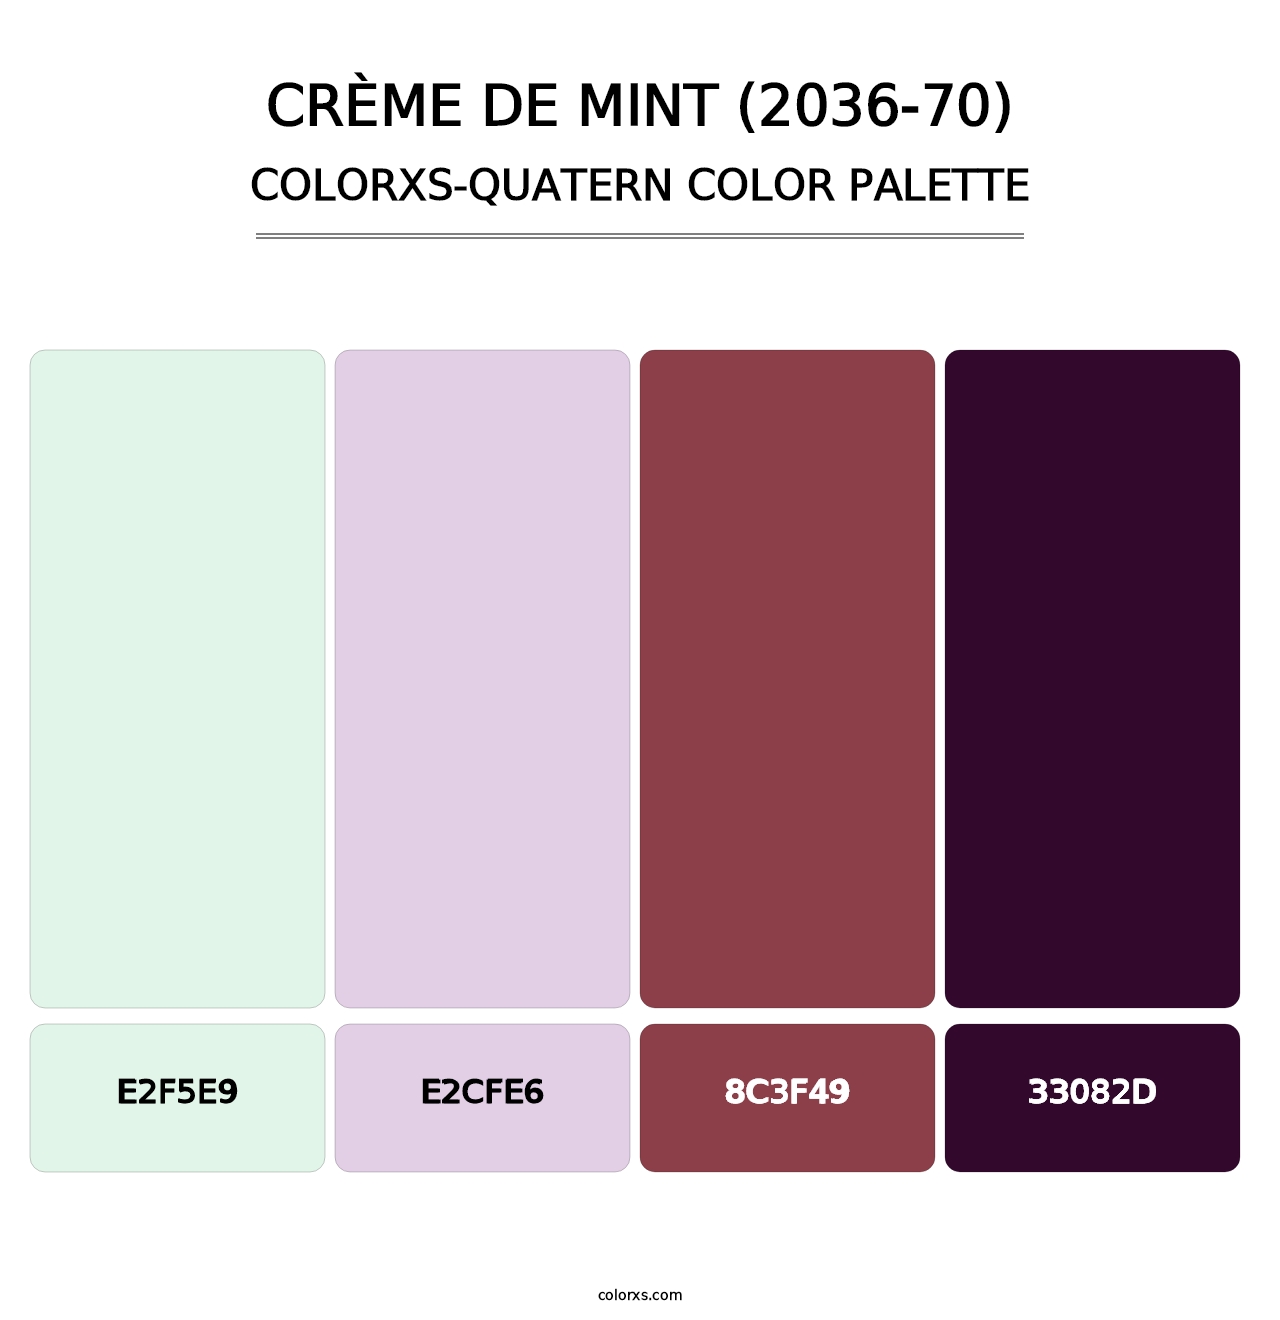 Crème de Mint (2036-70) - Colorxs Quatern Palette